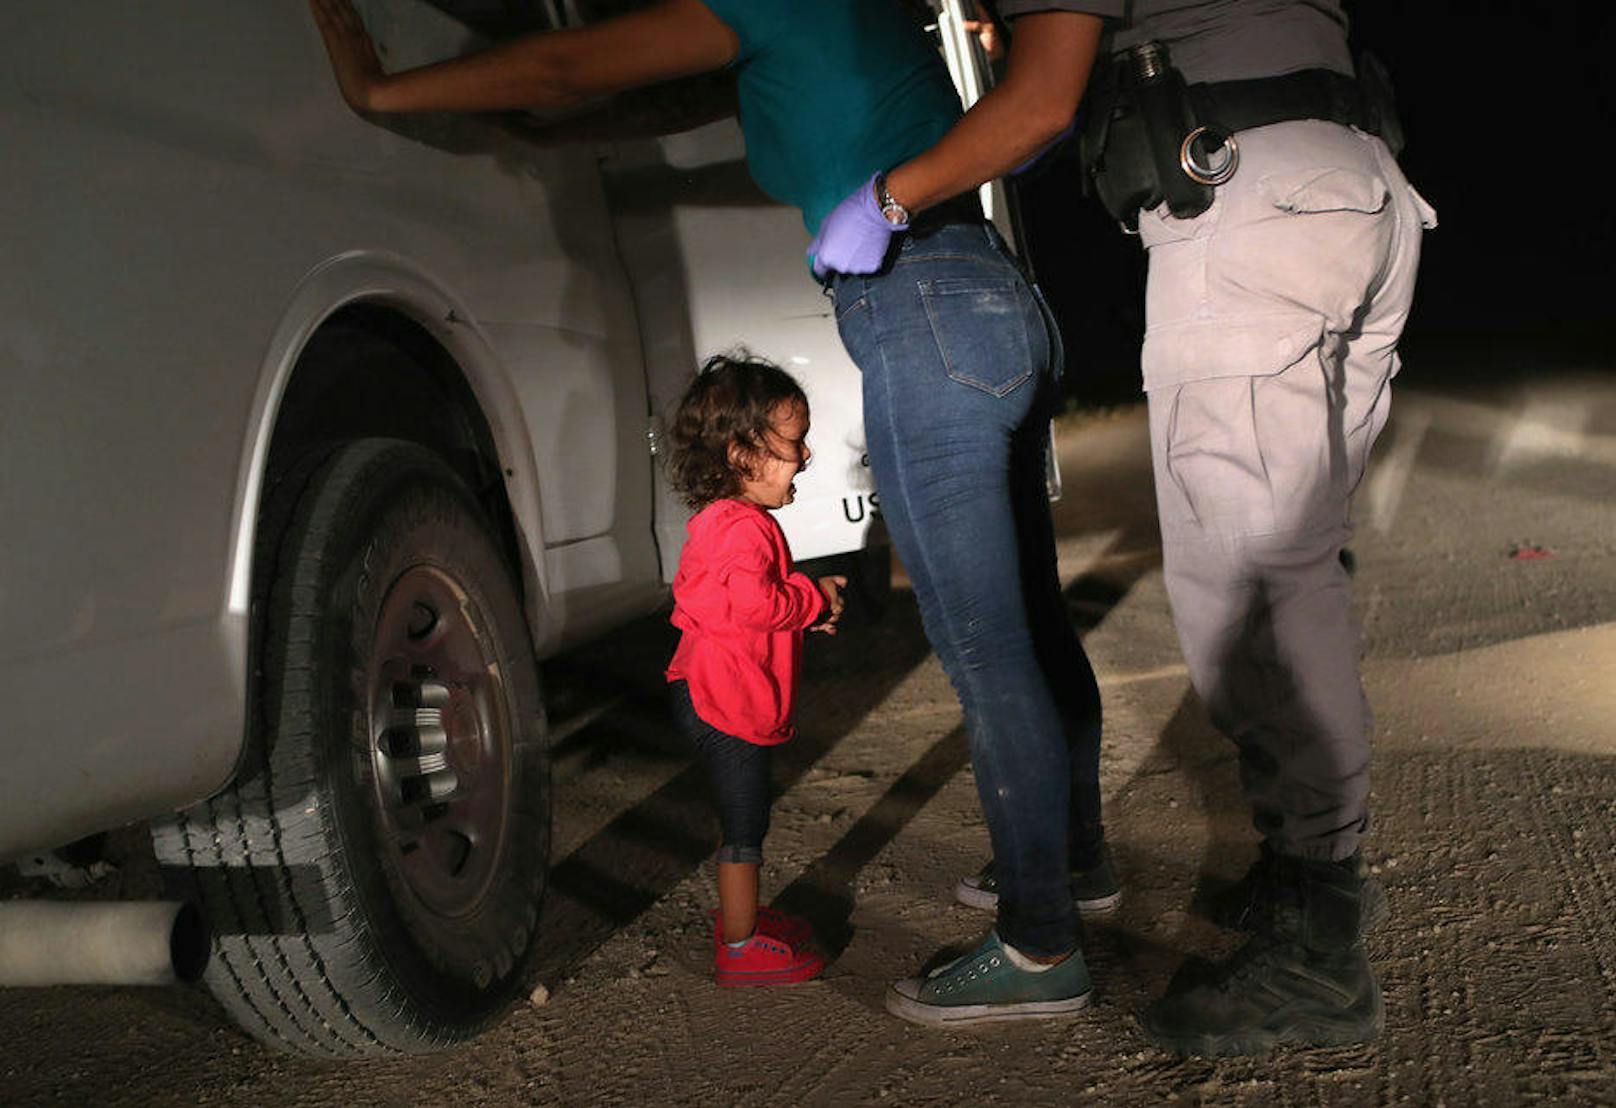 Die Mutter musste für die Durchsuchung ihr Kind aus den Armen geben - und da begann das kleine Mädchen zu weinen.